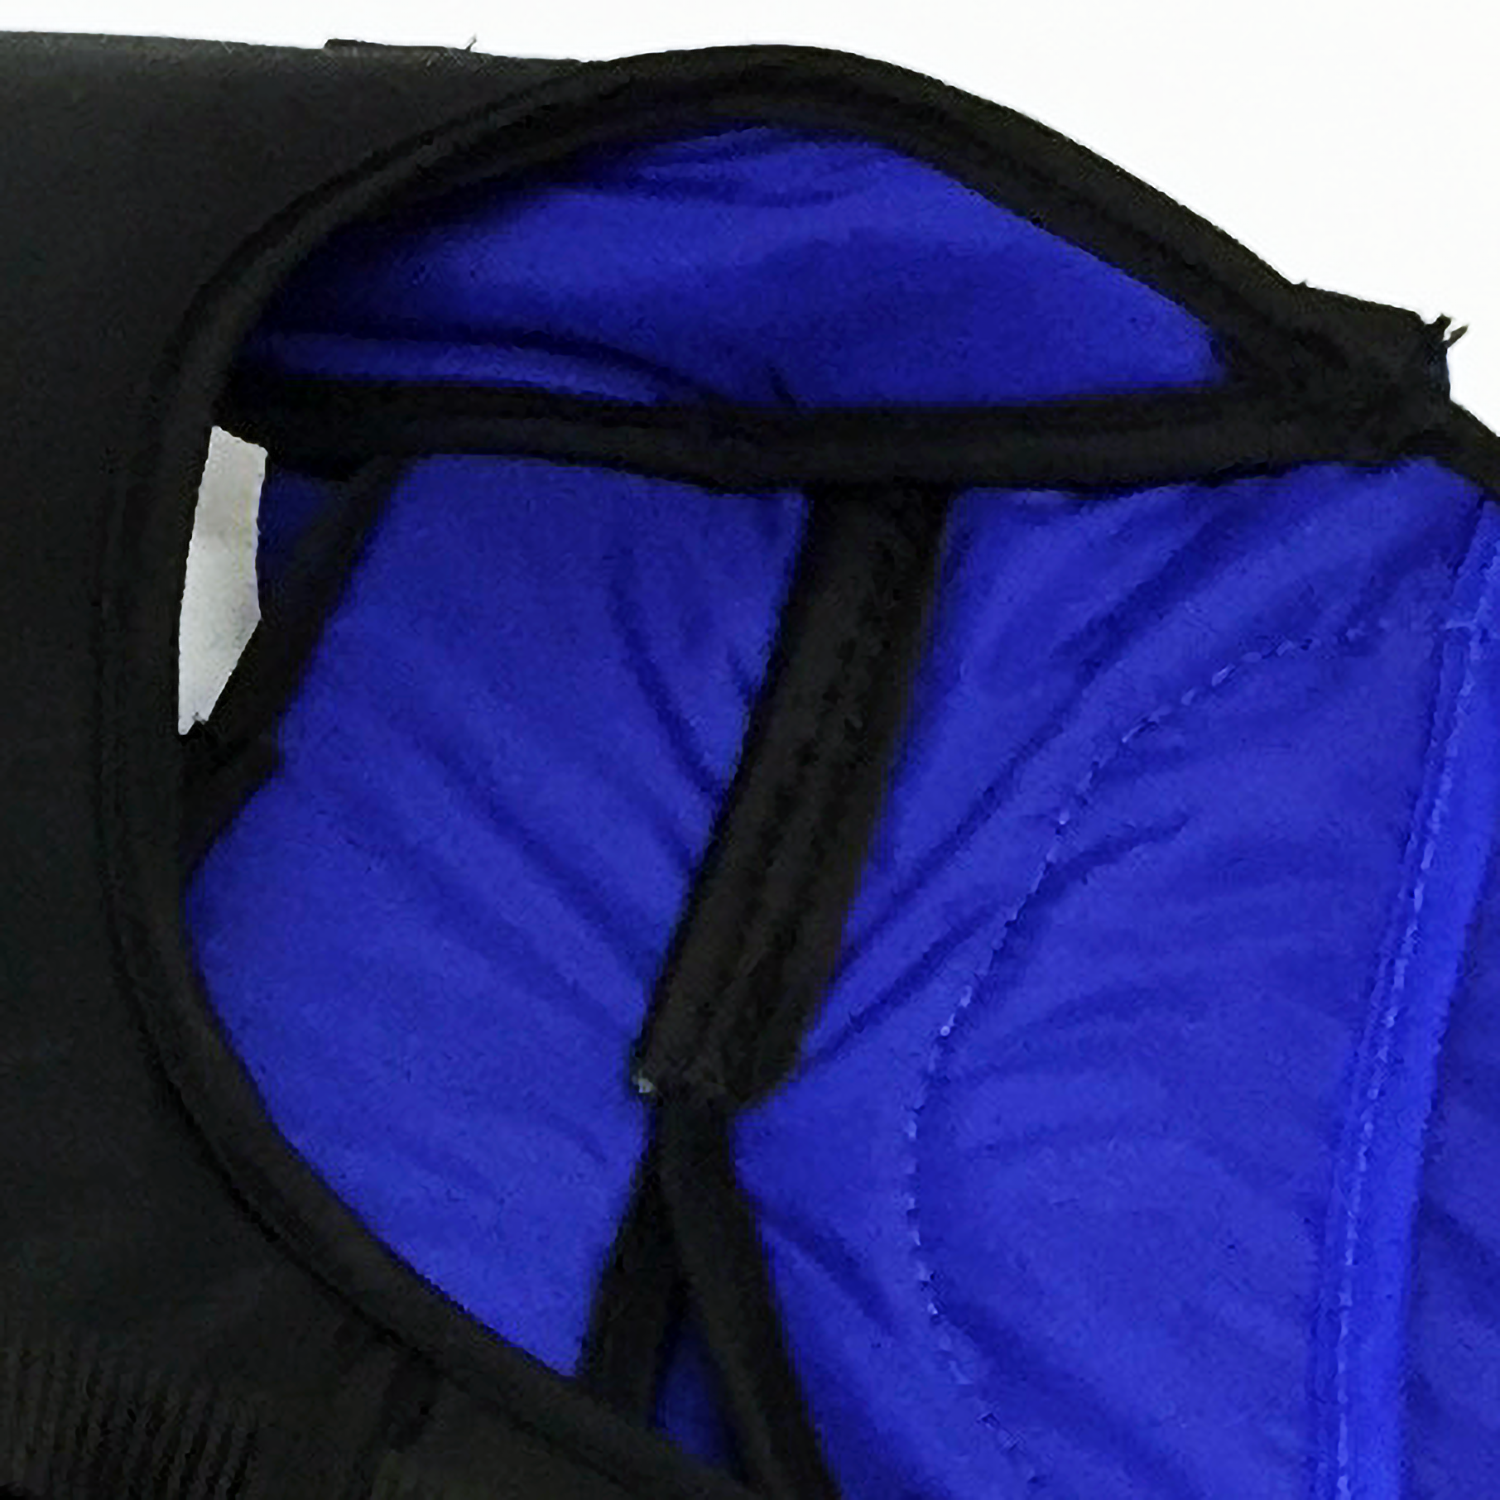 Standard interior shoulder